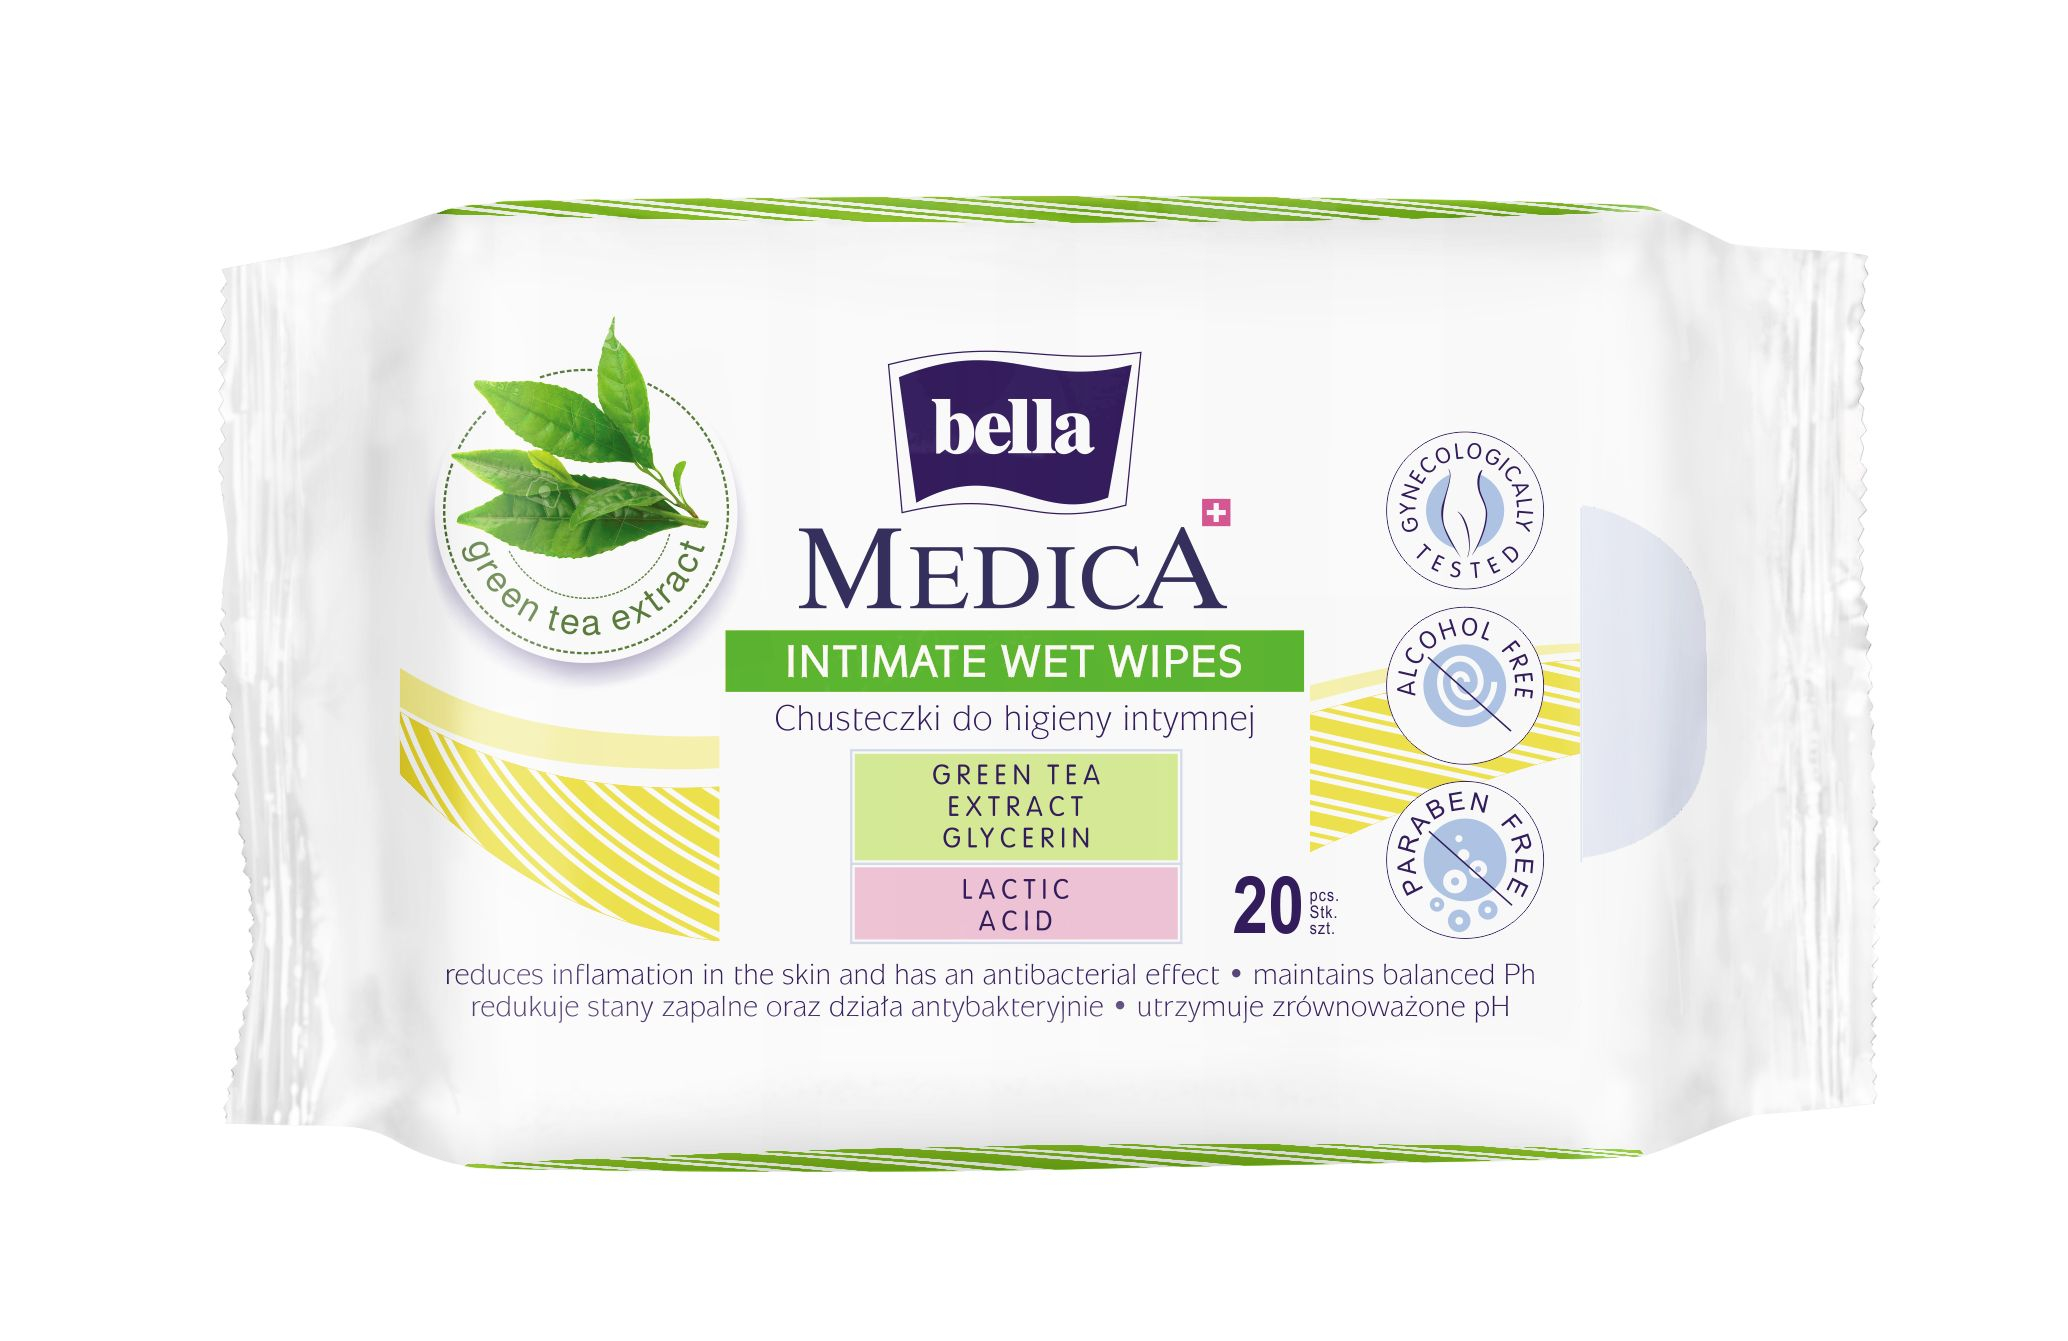 Bella Medica intimní vlhčené ubrousky 20 ks Bella